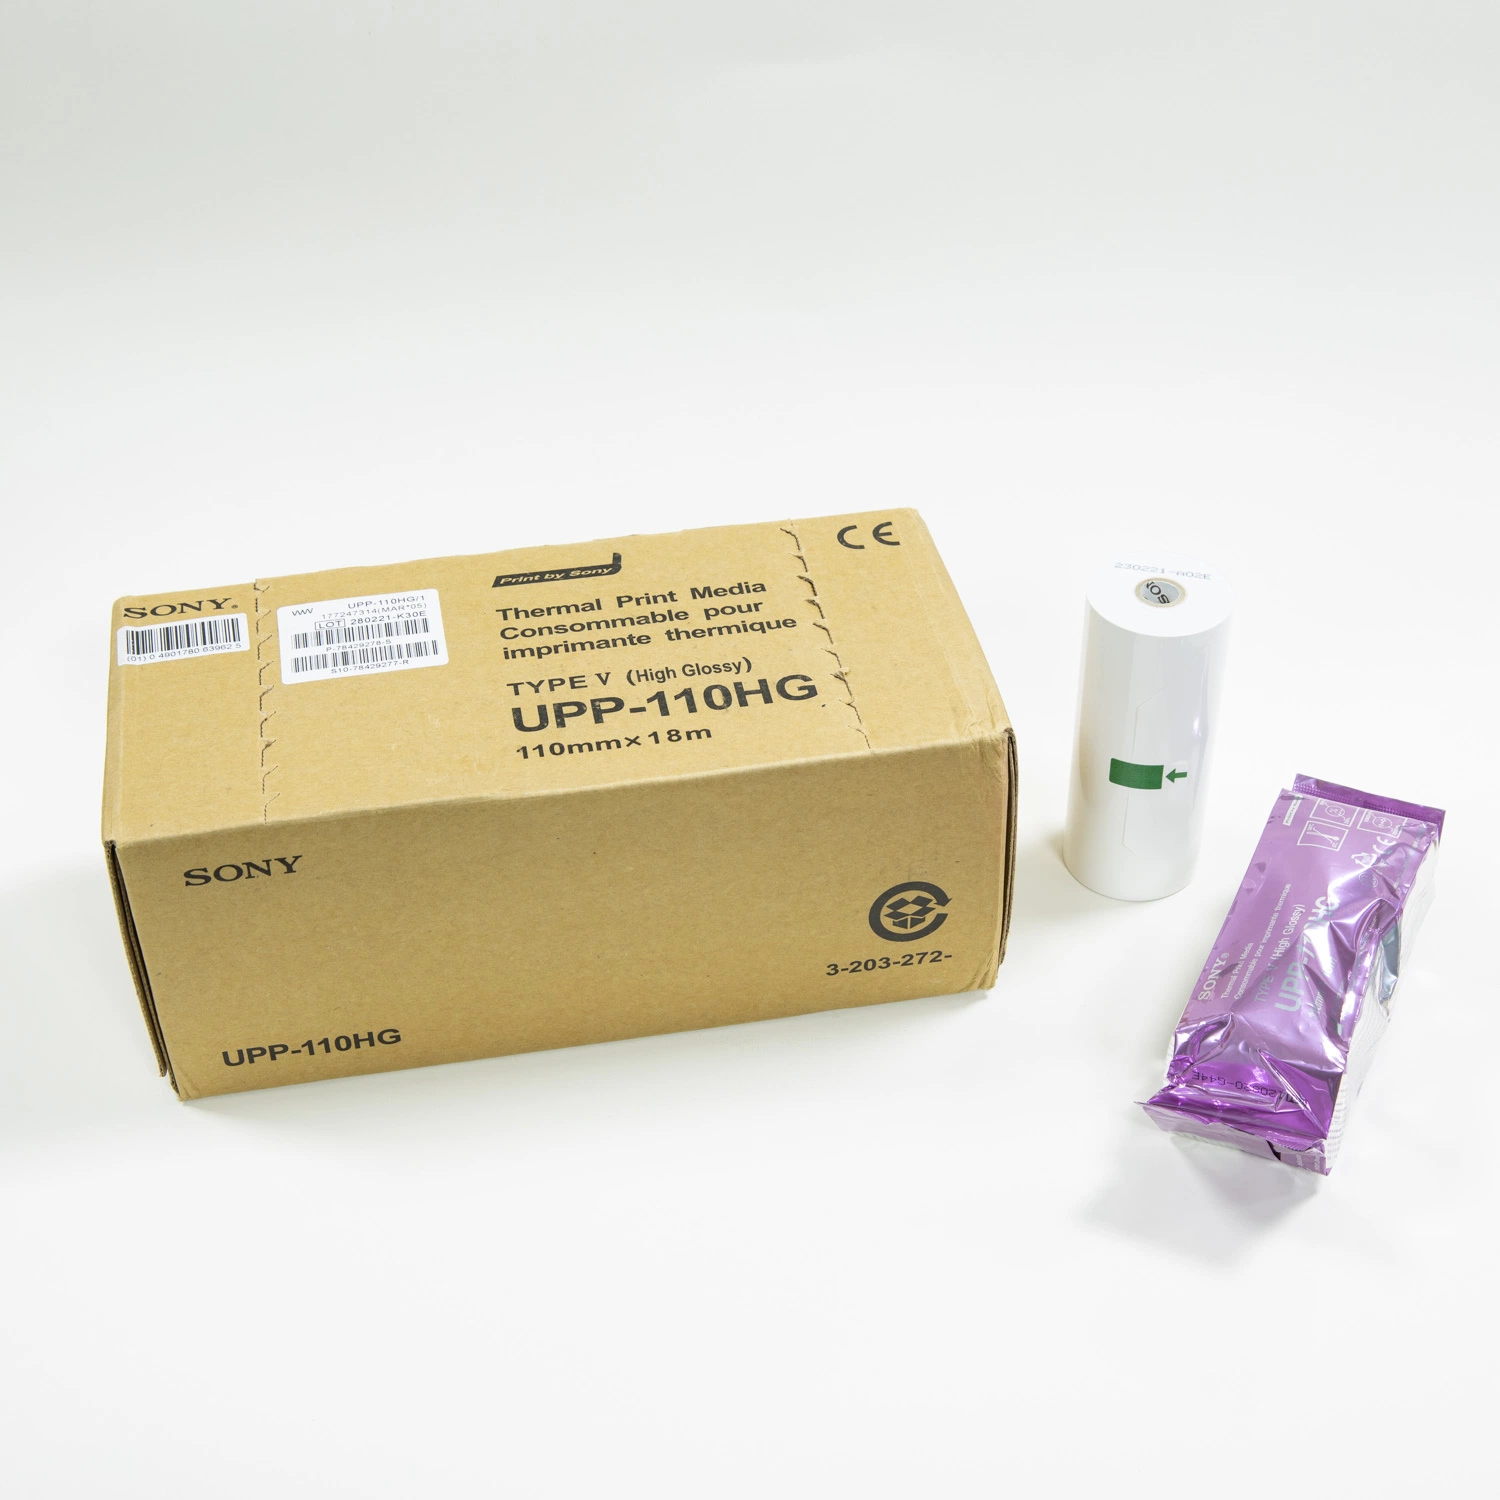 Носитель для термопечати Sony Upp-110hg тип V High Glossy Medical Термоультразвуковая бумага для принтеров Sony и Mitsubishi